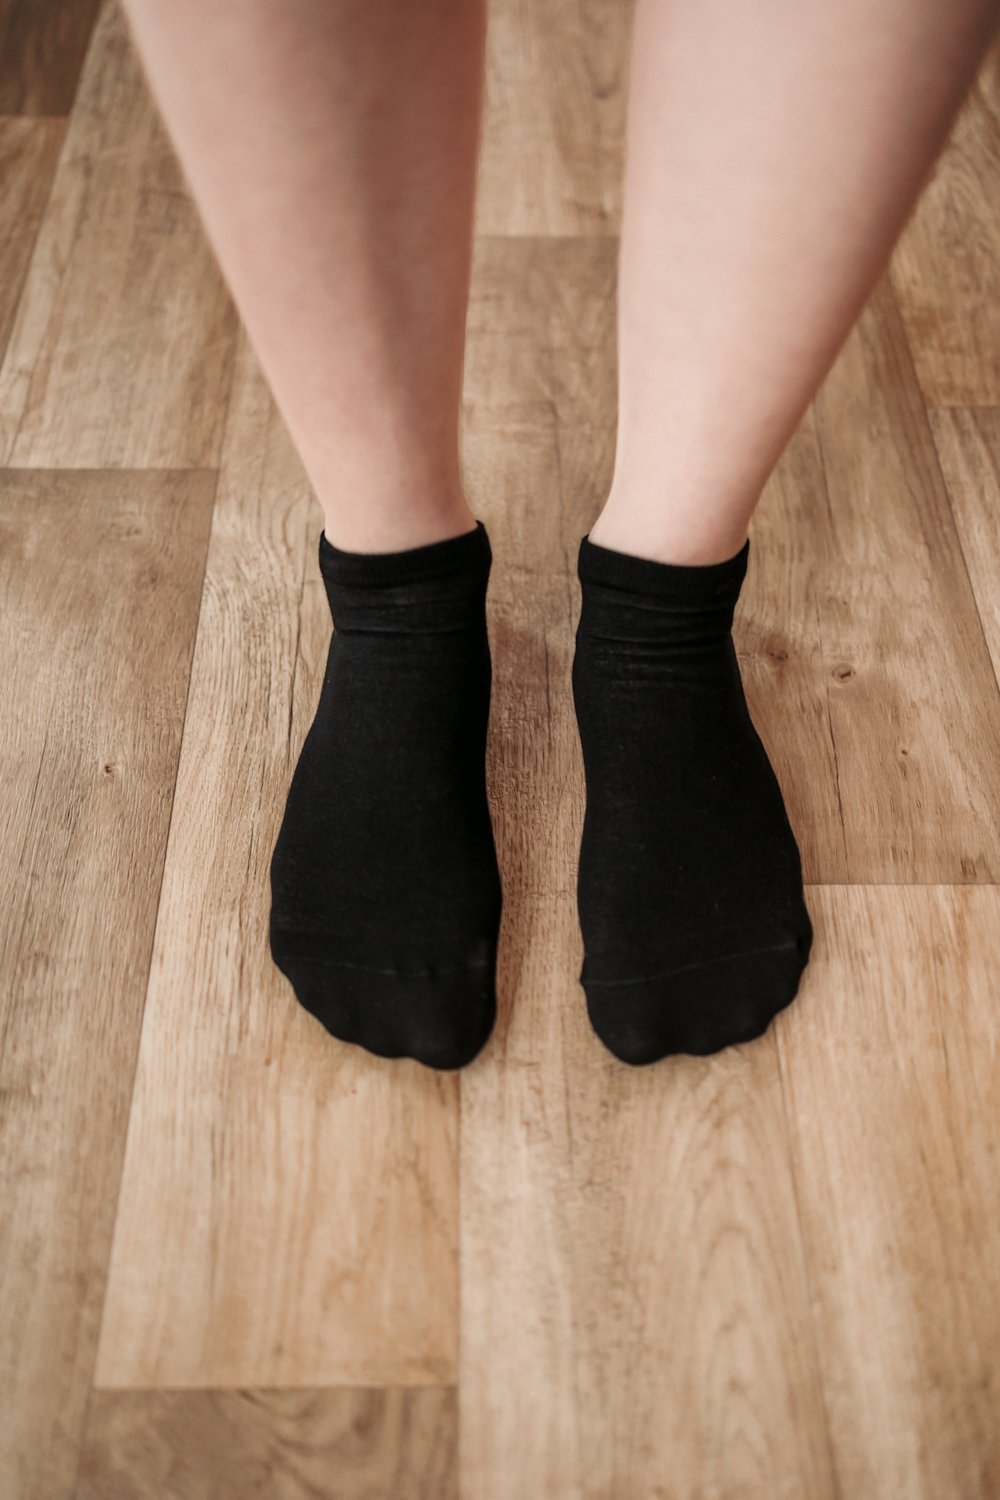 Be Lenka barefootové ponožky nízké černé Velikosti ponožek, rukavic: 43-46